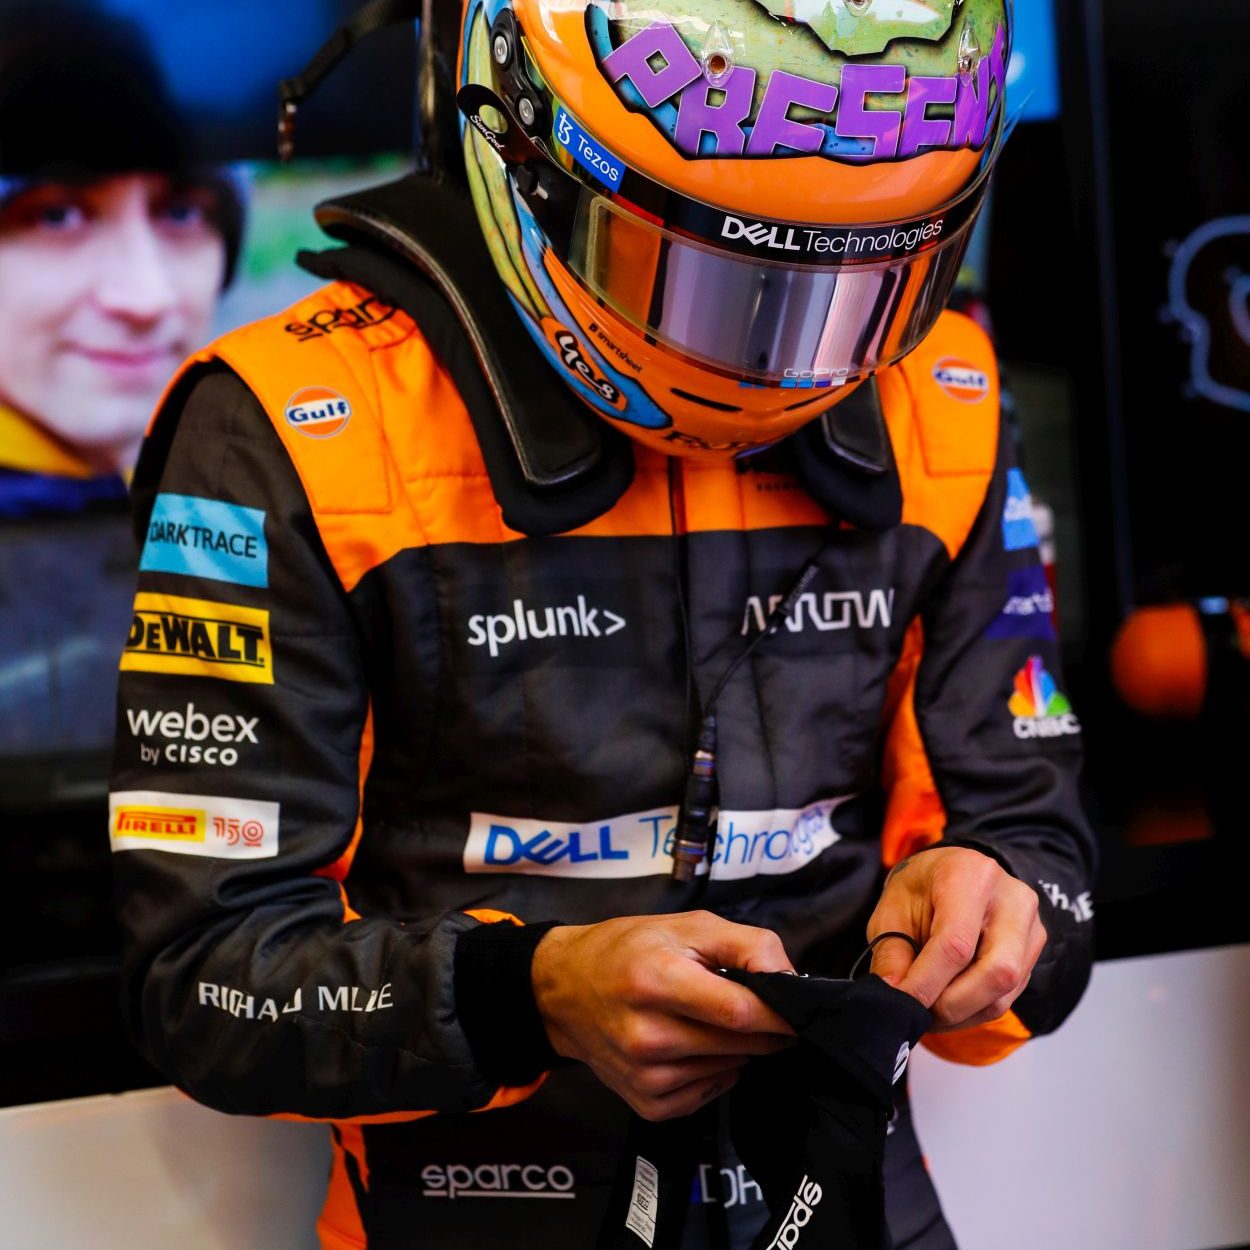 F1 | McLaren MCL36, lo Shakedown di Barcellona [Gallery]